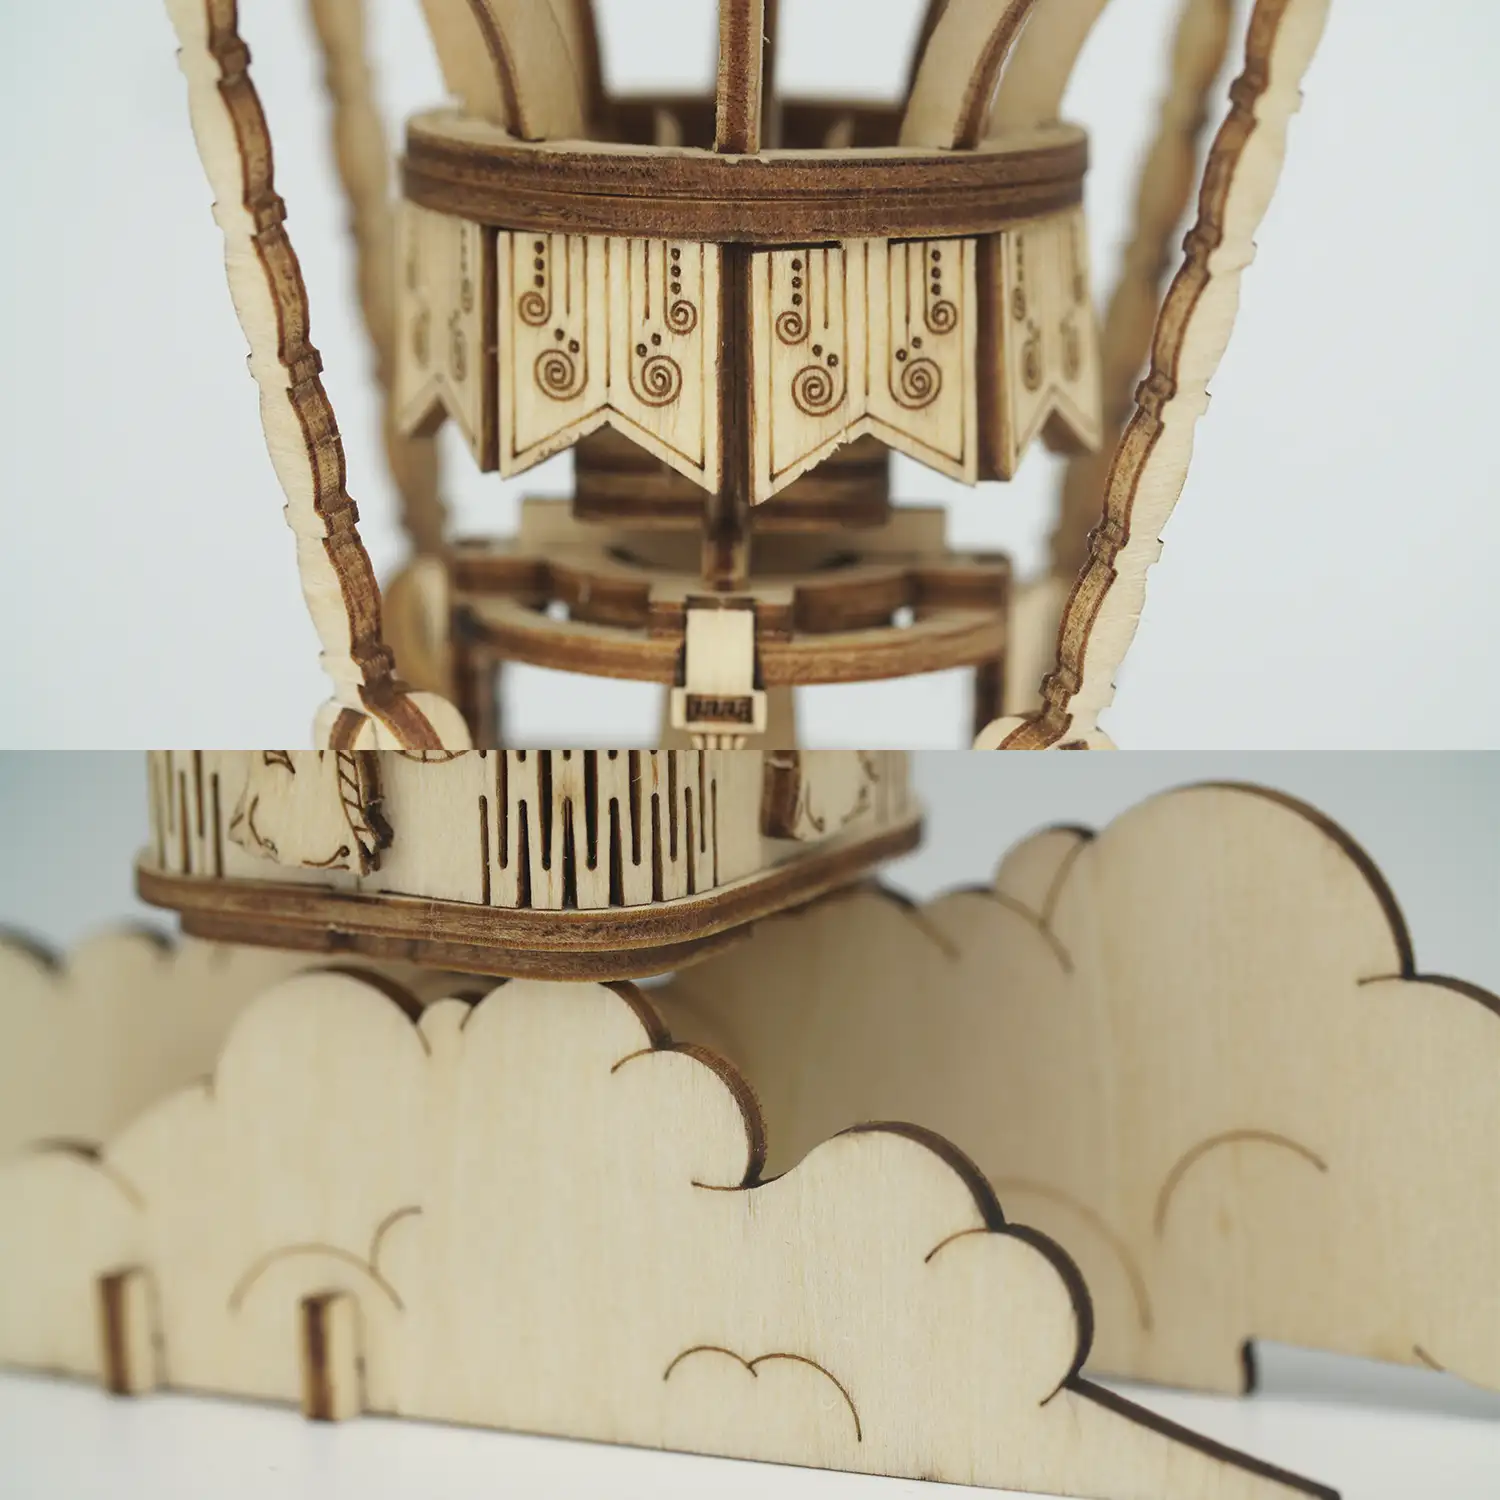 Globo aerostático. Maqueta 3D realista con gran detalle, 140 piezas.